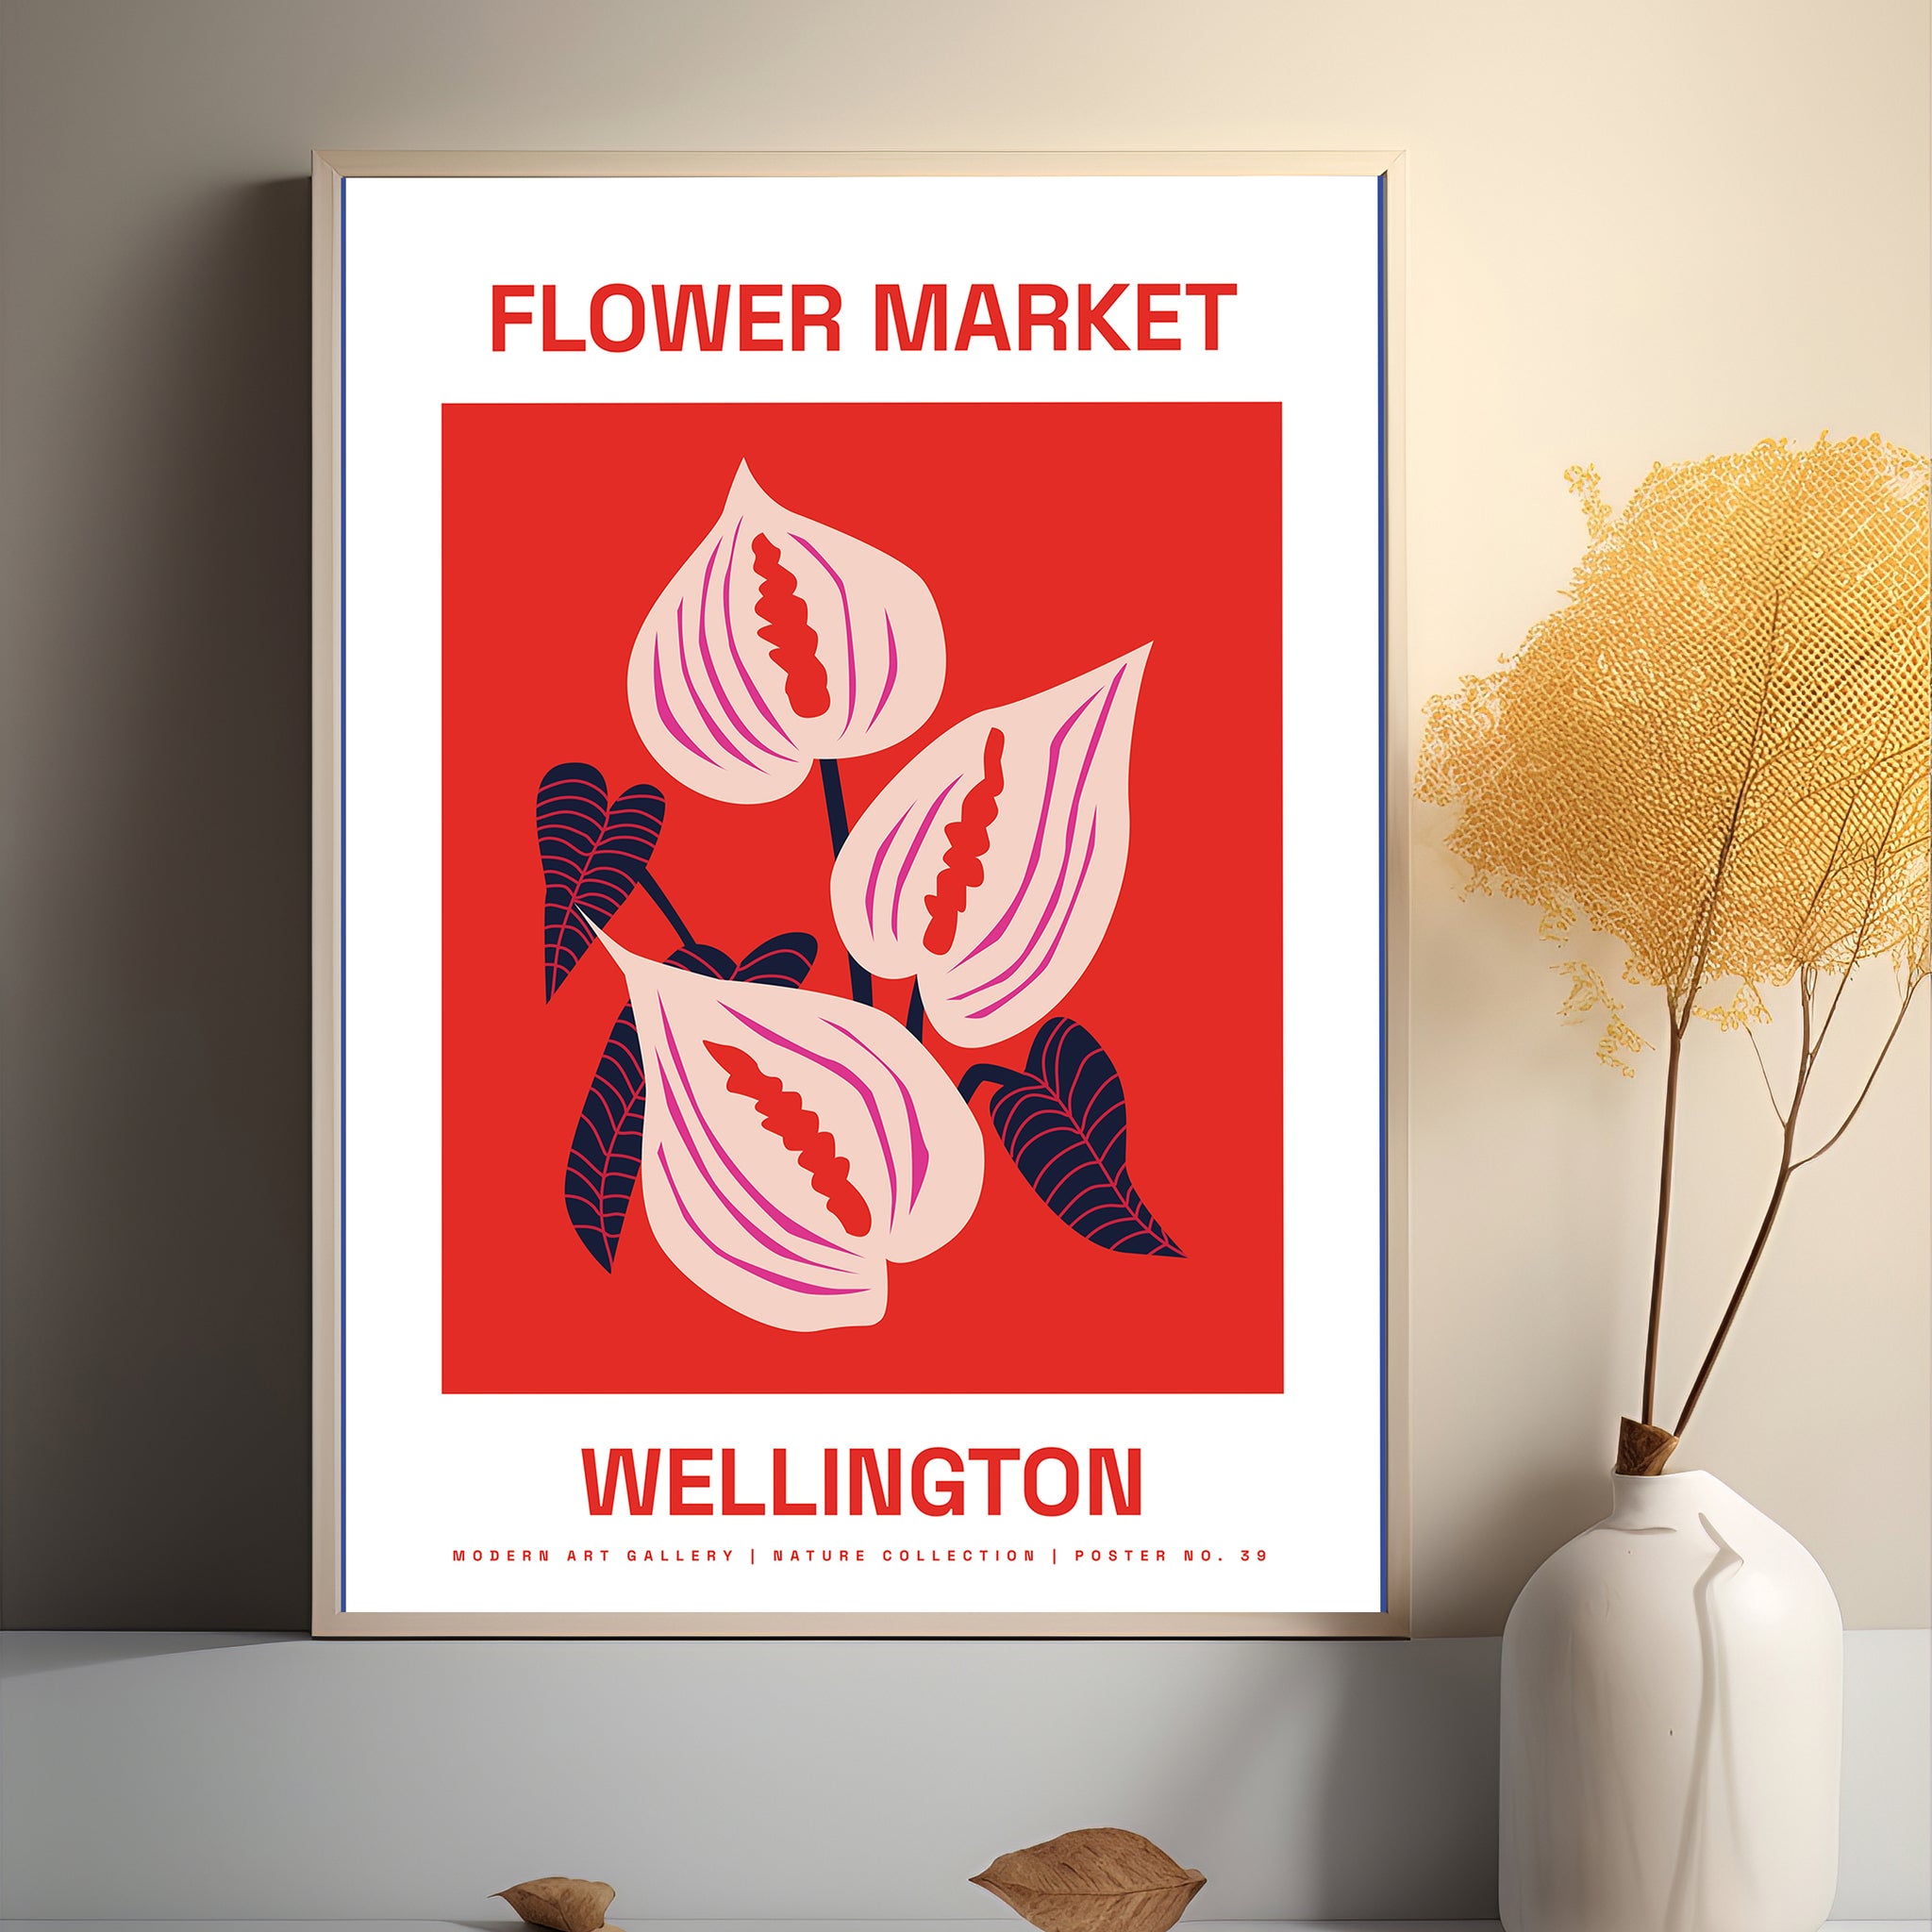 Wellington’s vibrant flower market poster.